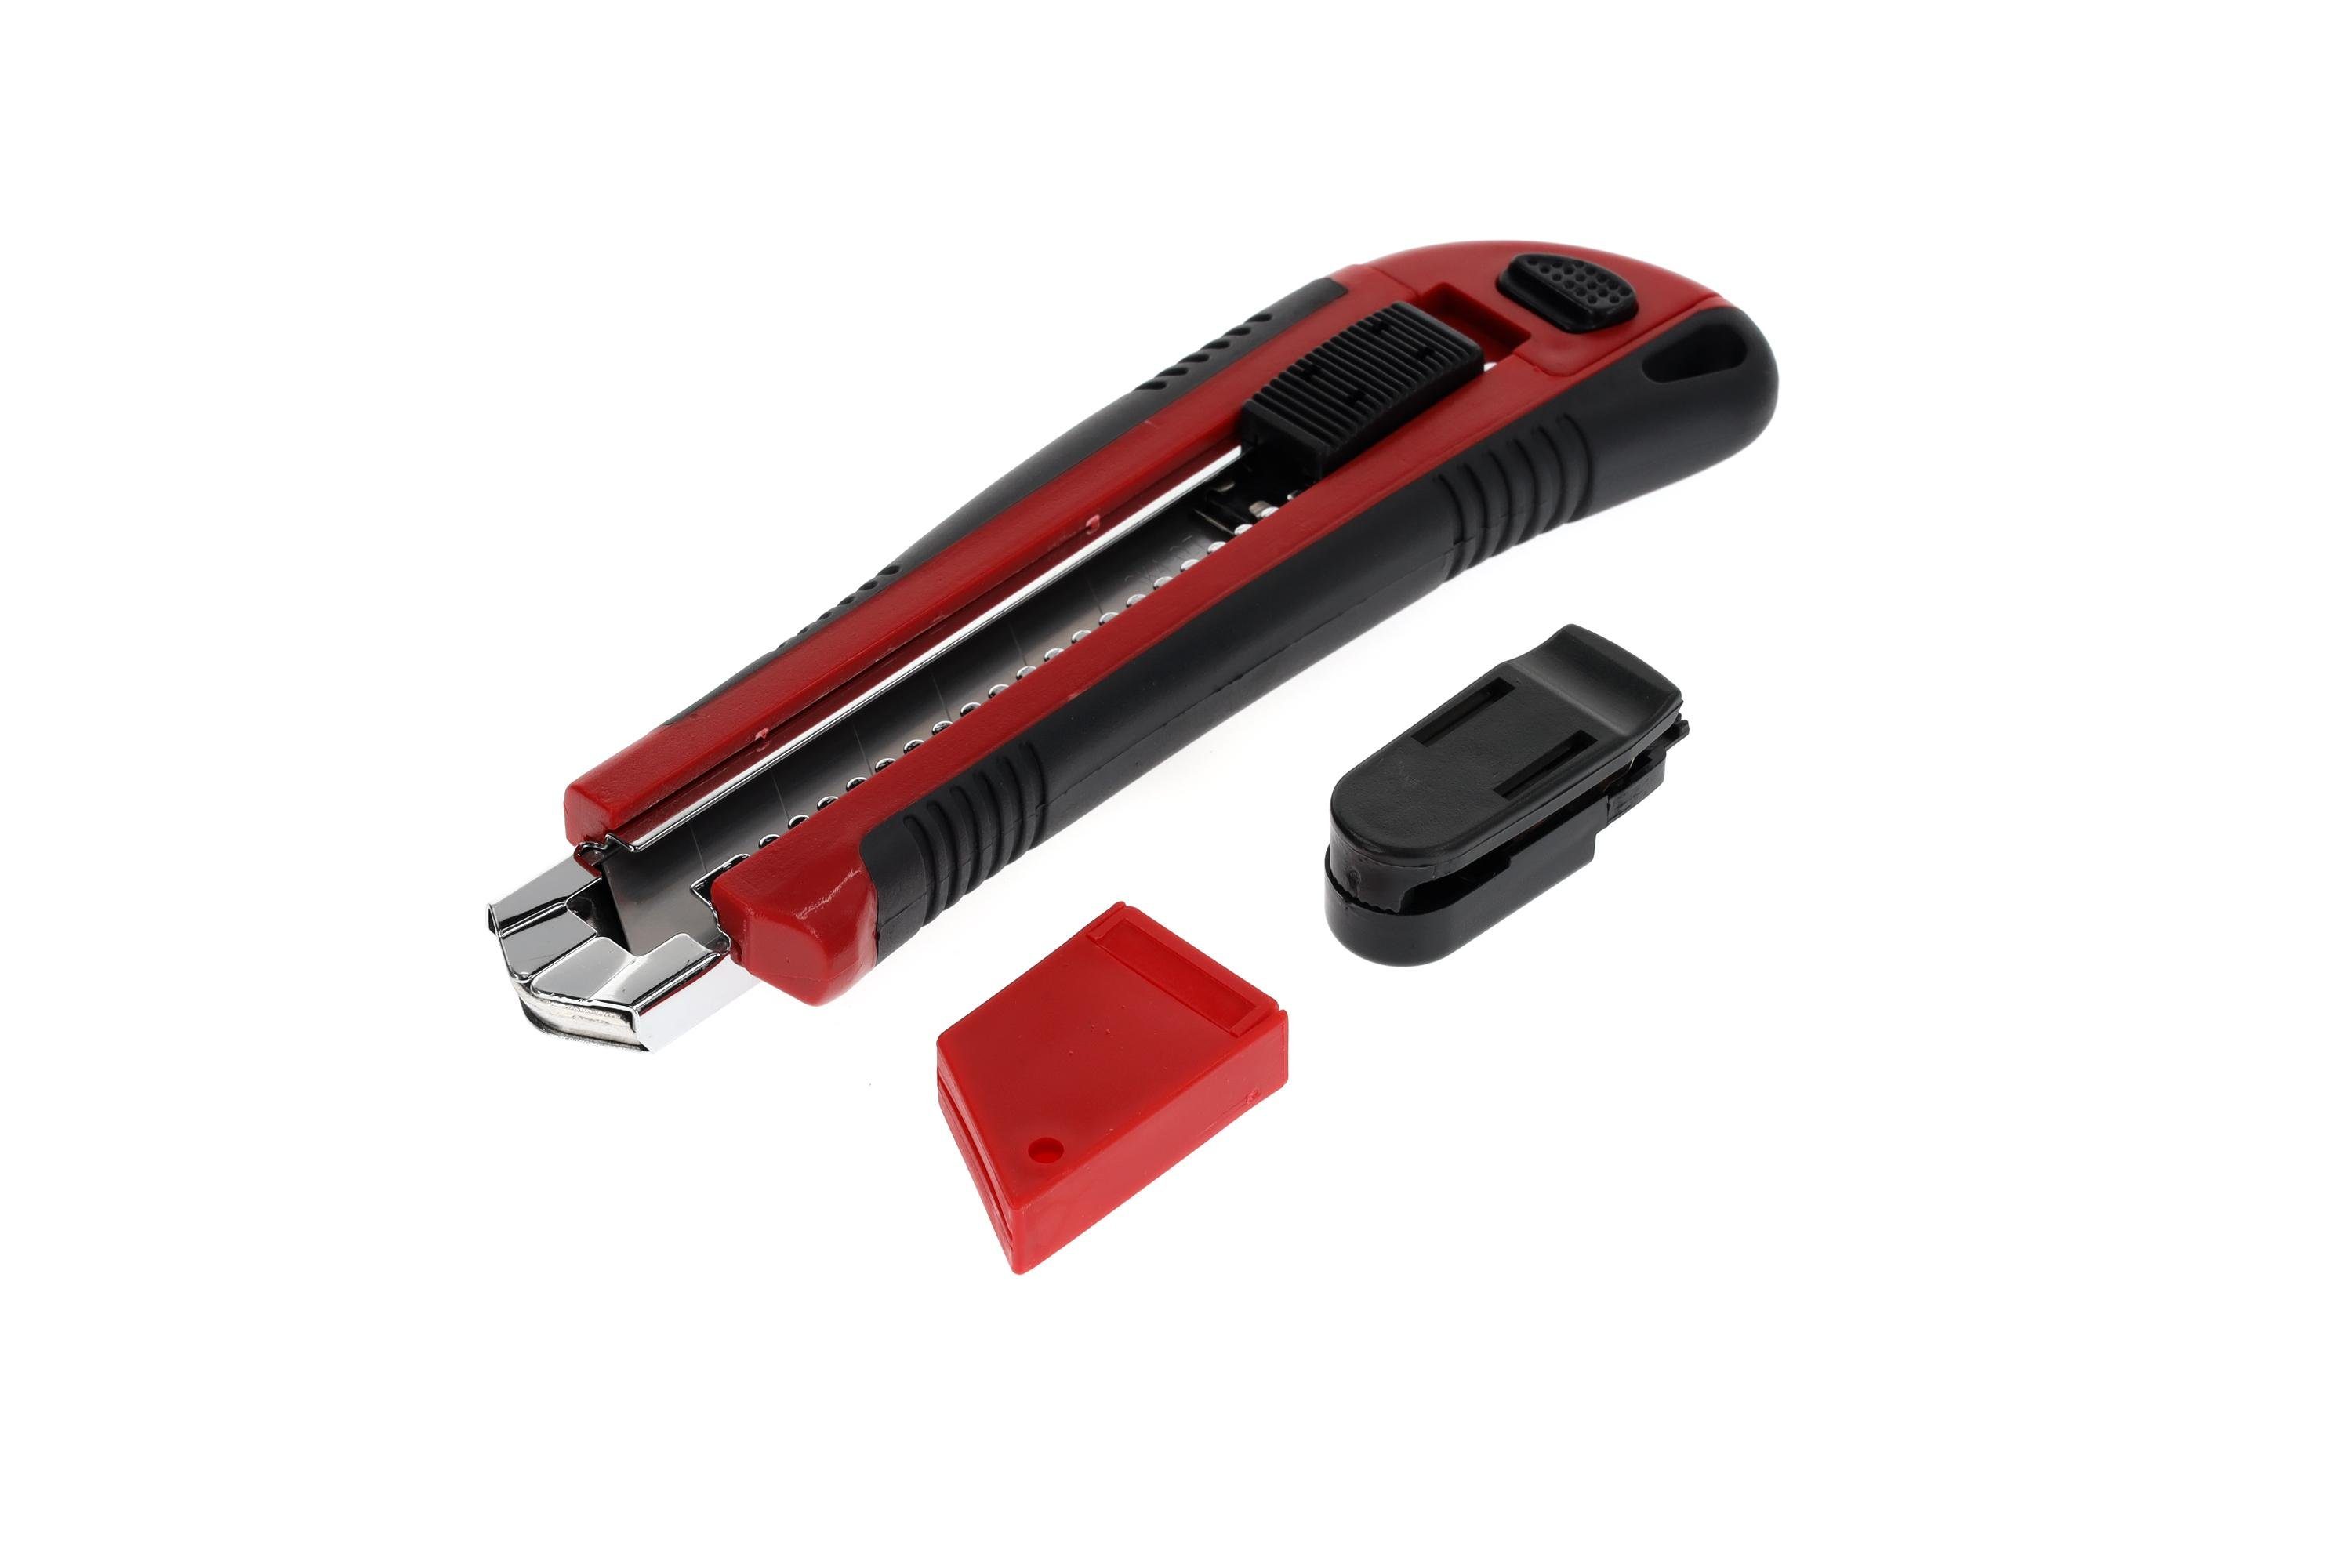 Gedore Red Cuttermesser R93200025 Cuttermesser 5 Klingenbreite 25 mm mit Clip